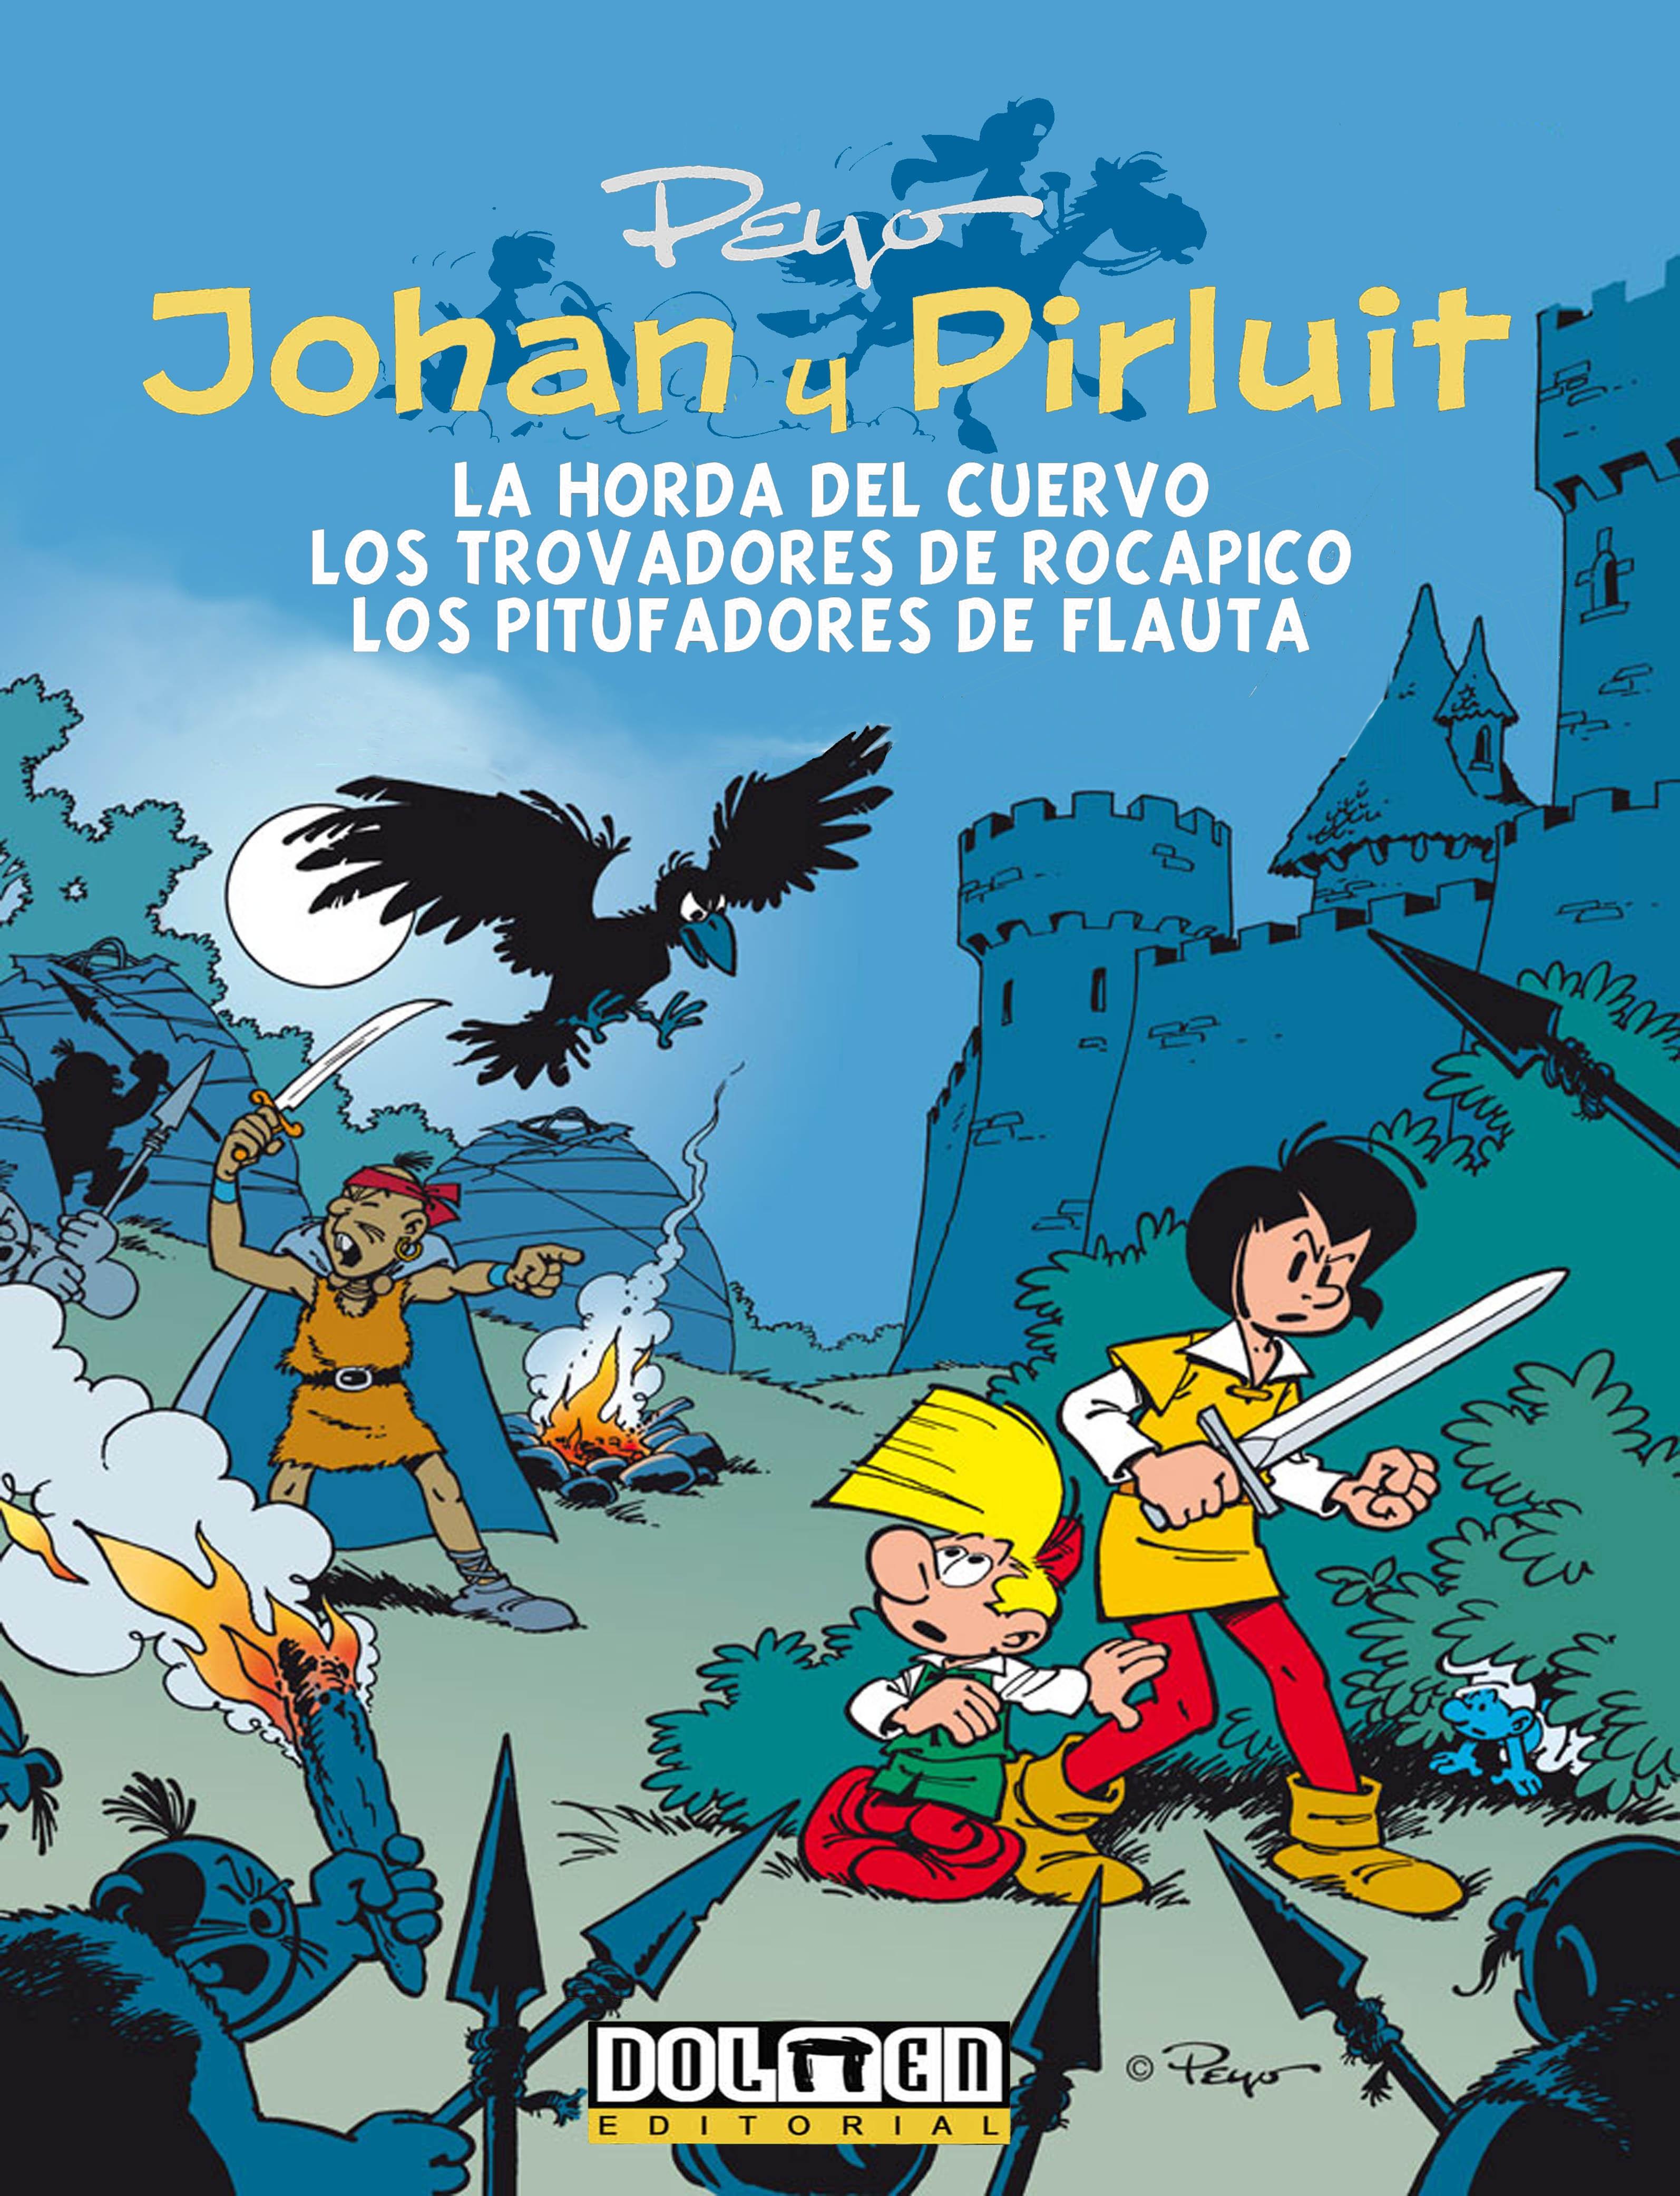 Johan y Pirluit Vol. 6 "La Hora del Cuervo, los Trovadores de Rocapico, los Pitufadores de Flaut"